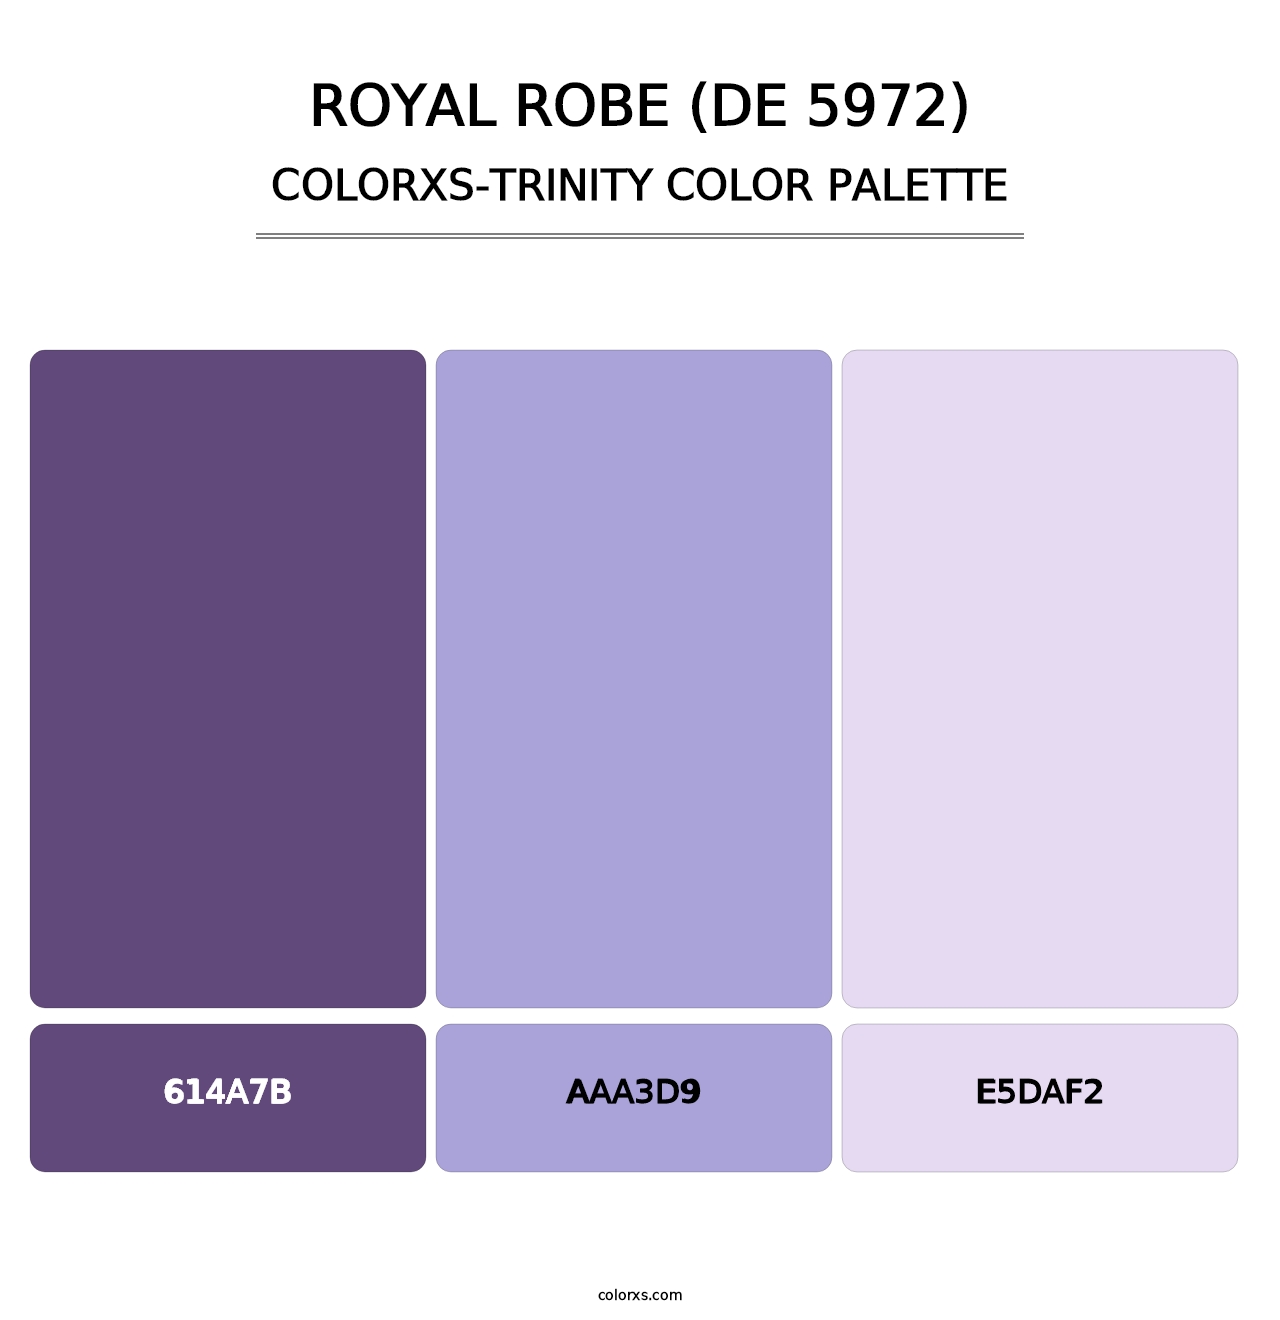 Royal Robe (DE 5972) - Colorxs Trinity Palette